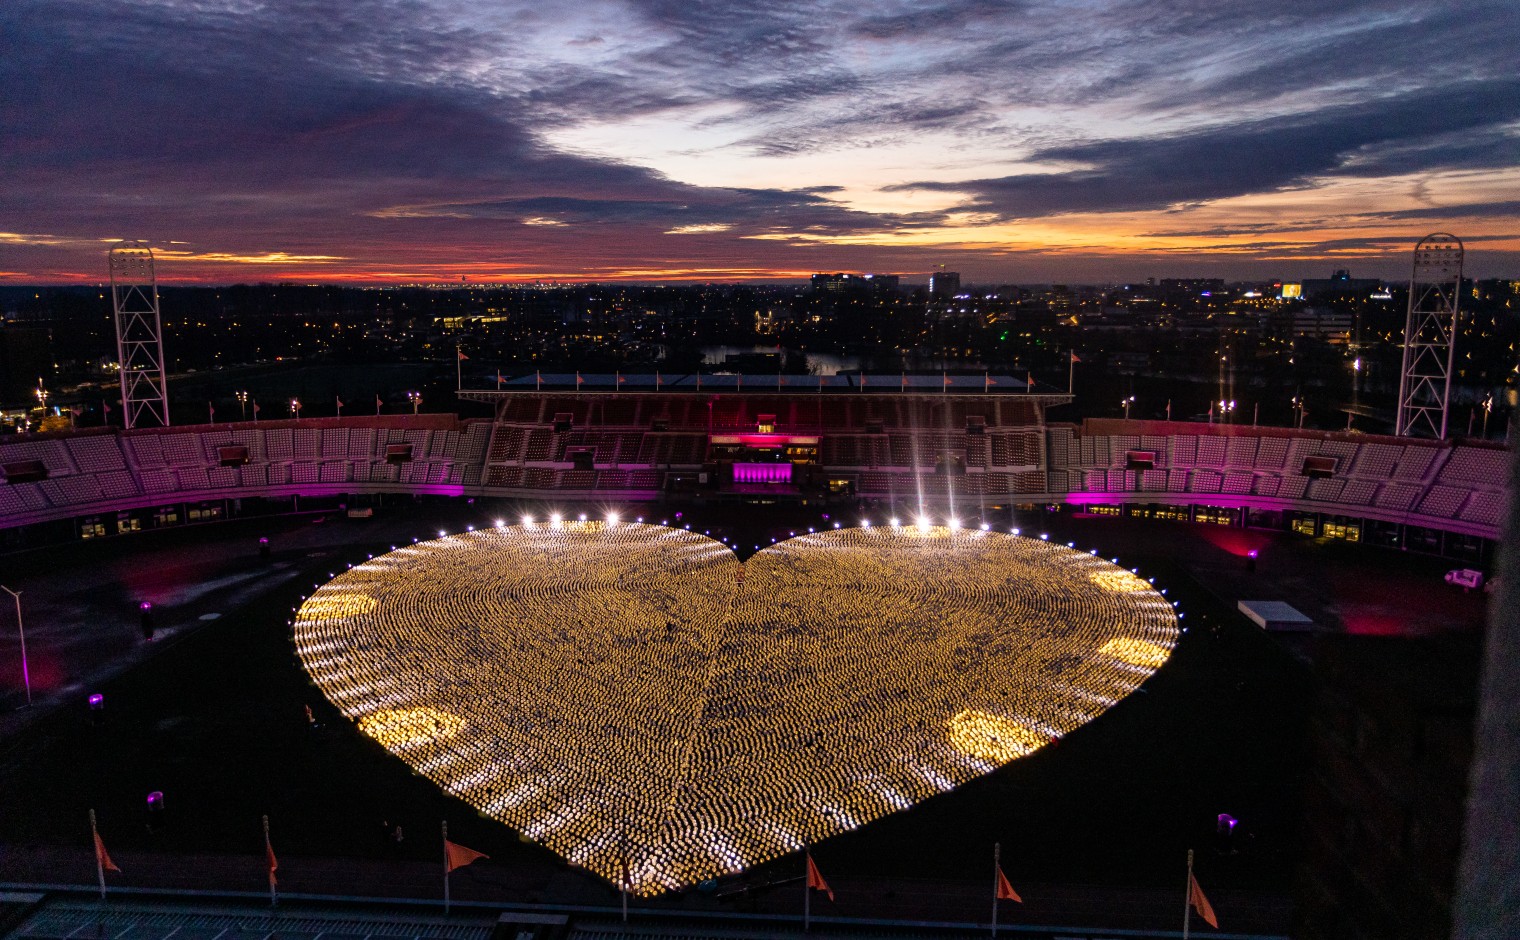 Het hart gevormd door 23000 lampionnen in het Olympisch Stadion Amsterdam.